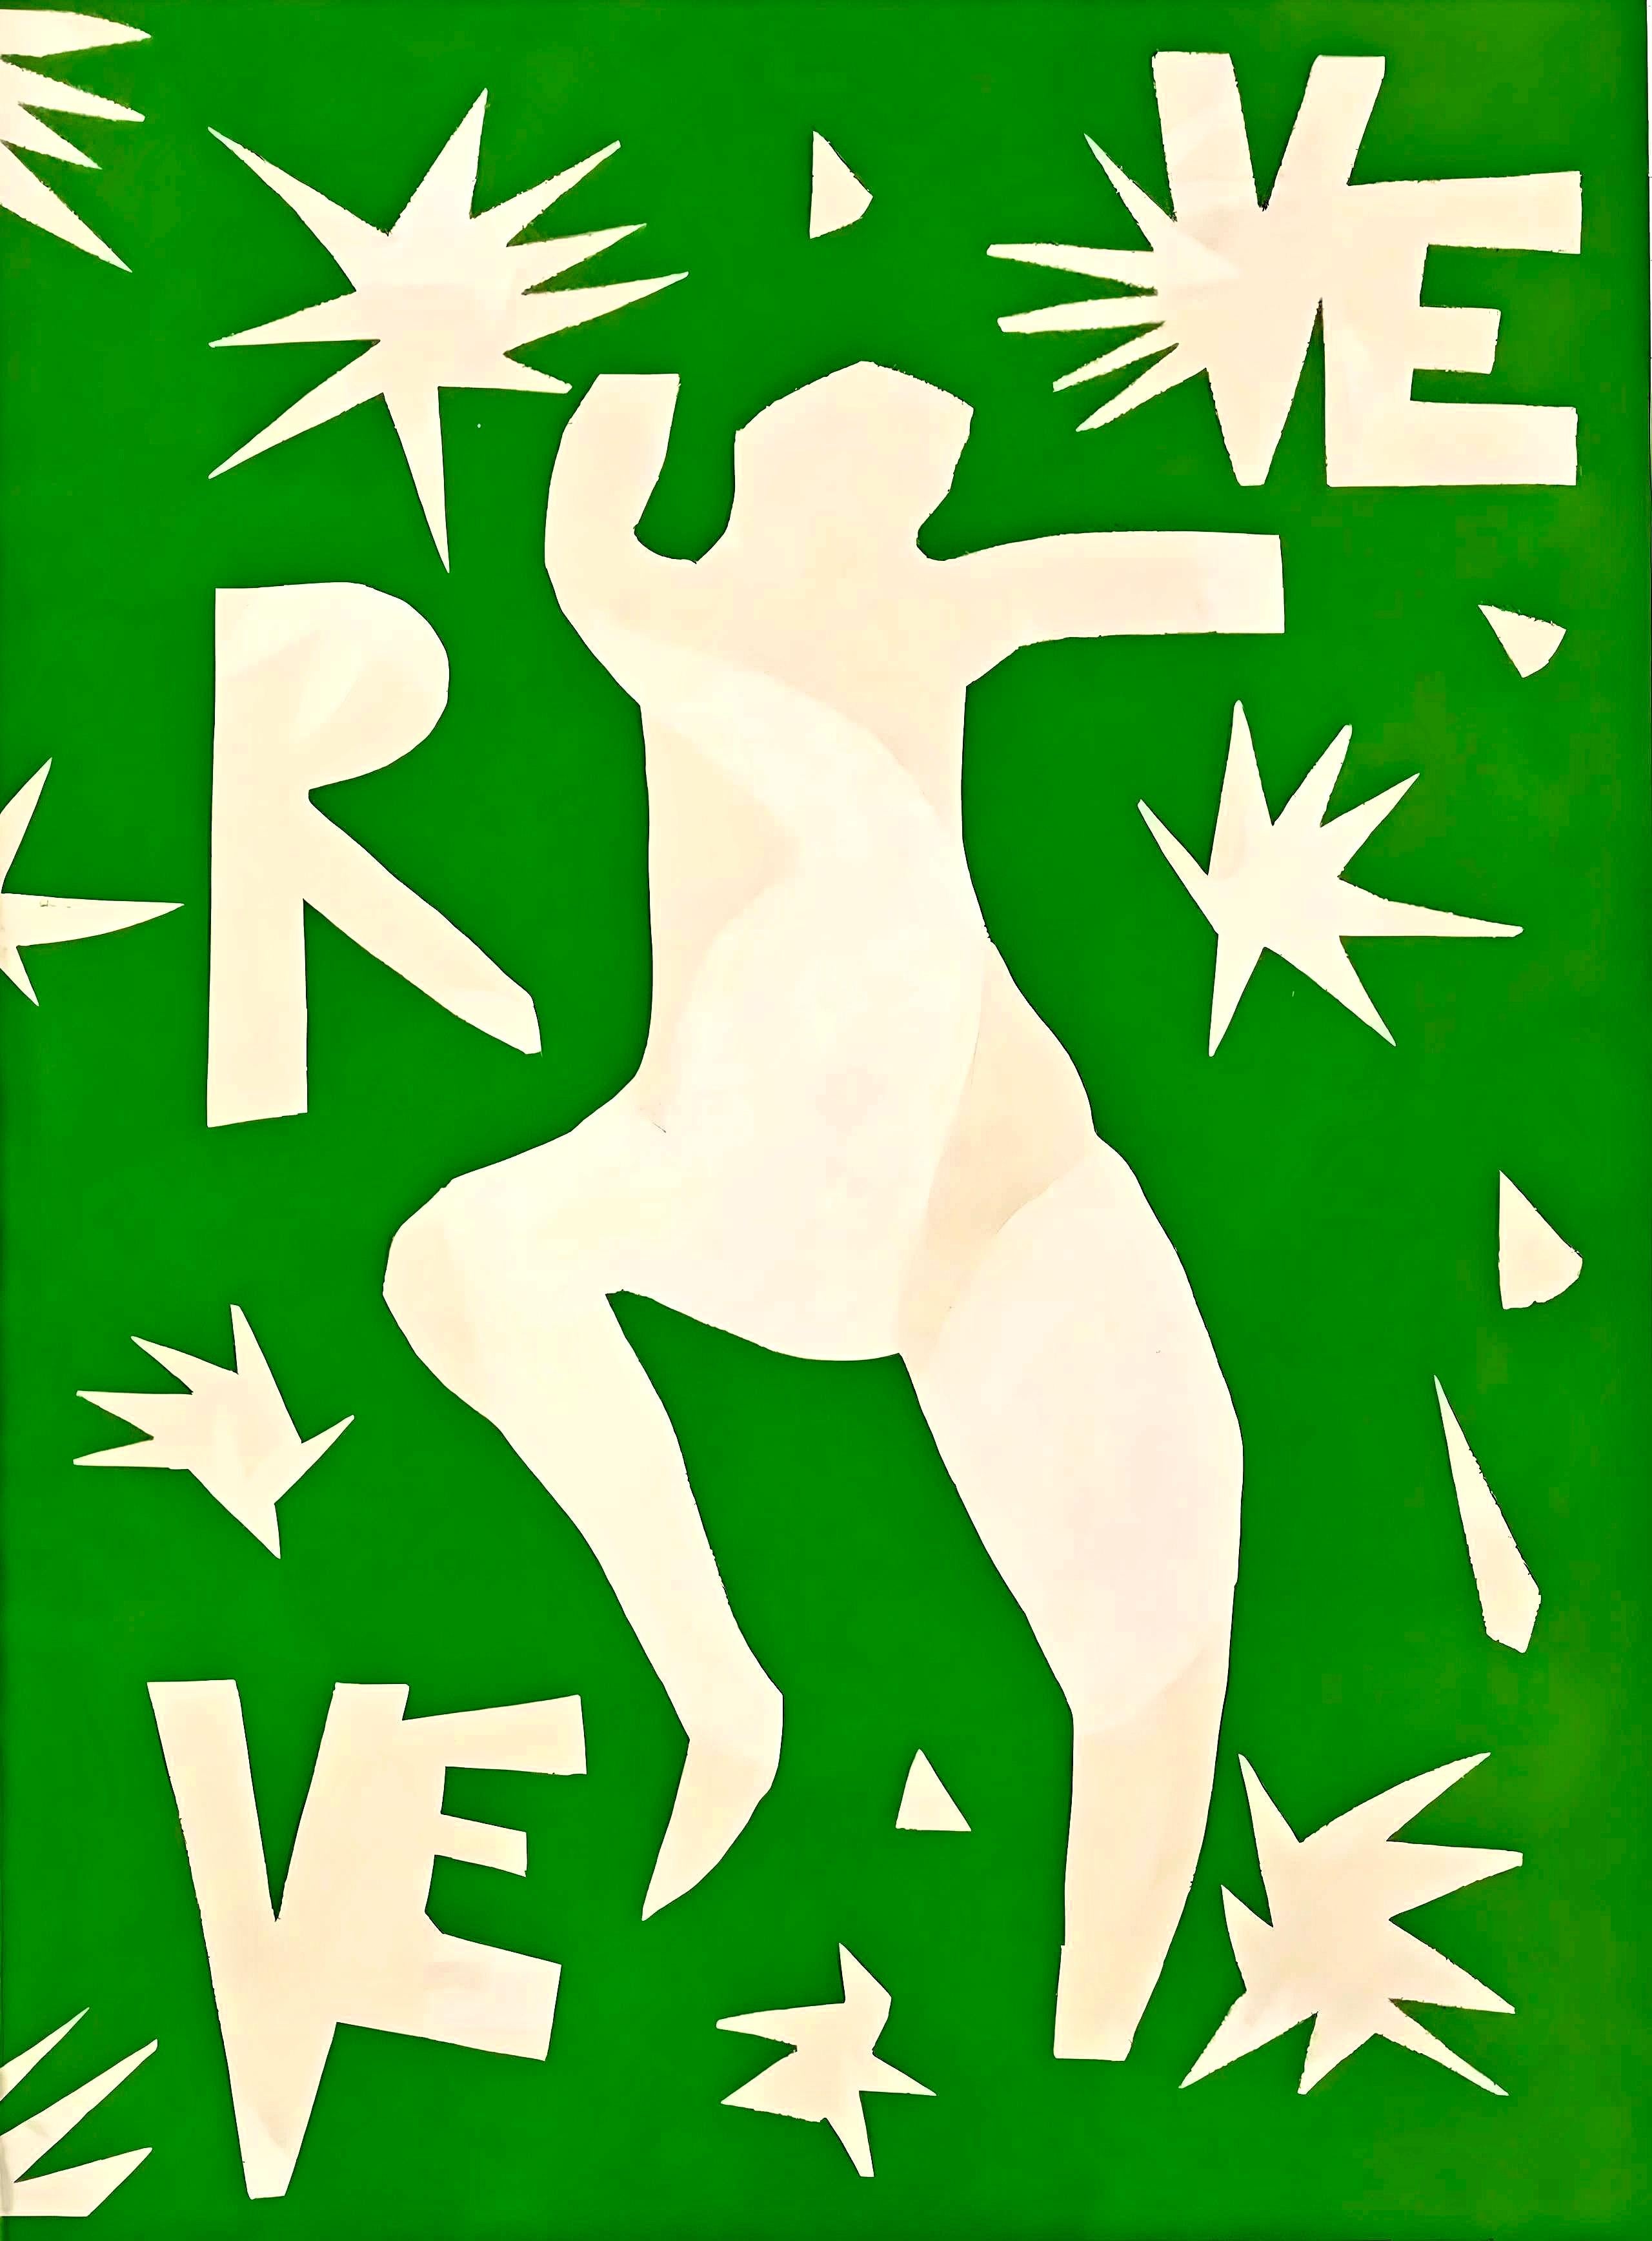 Matisse, Couverture, Verve: Revue Artistique et Littéraire (after) - Print by Henri Matisse